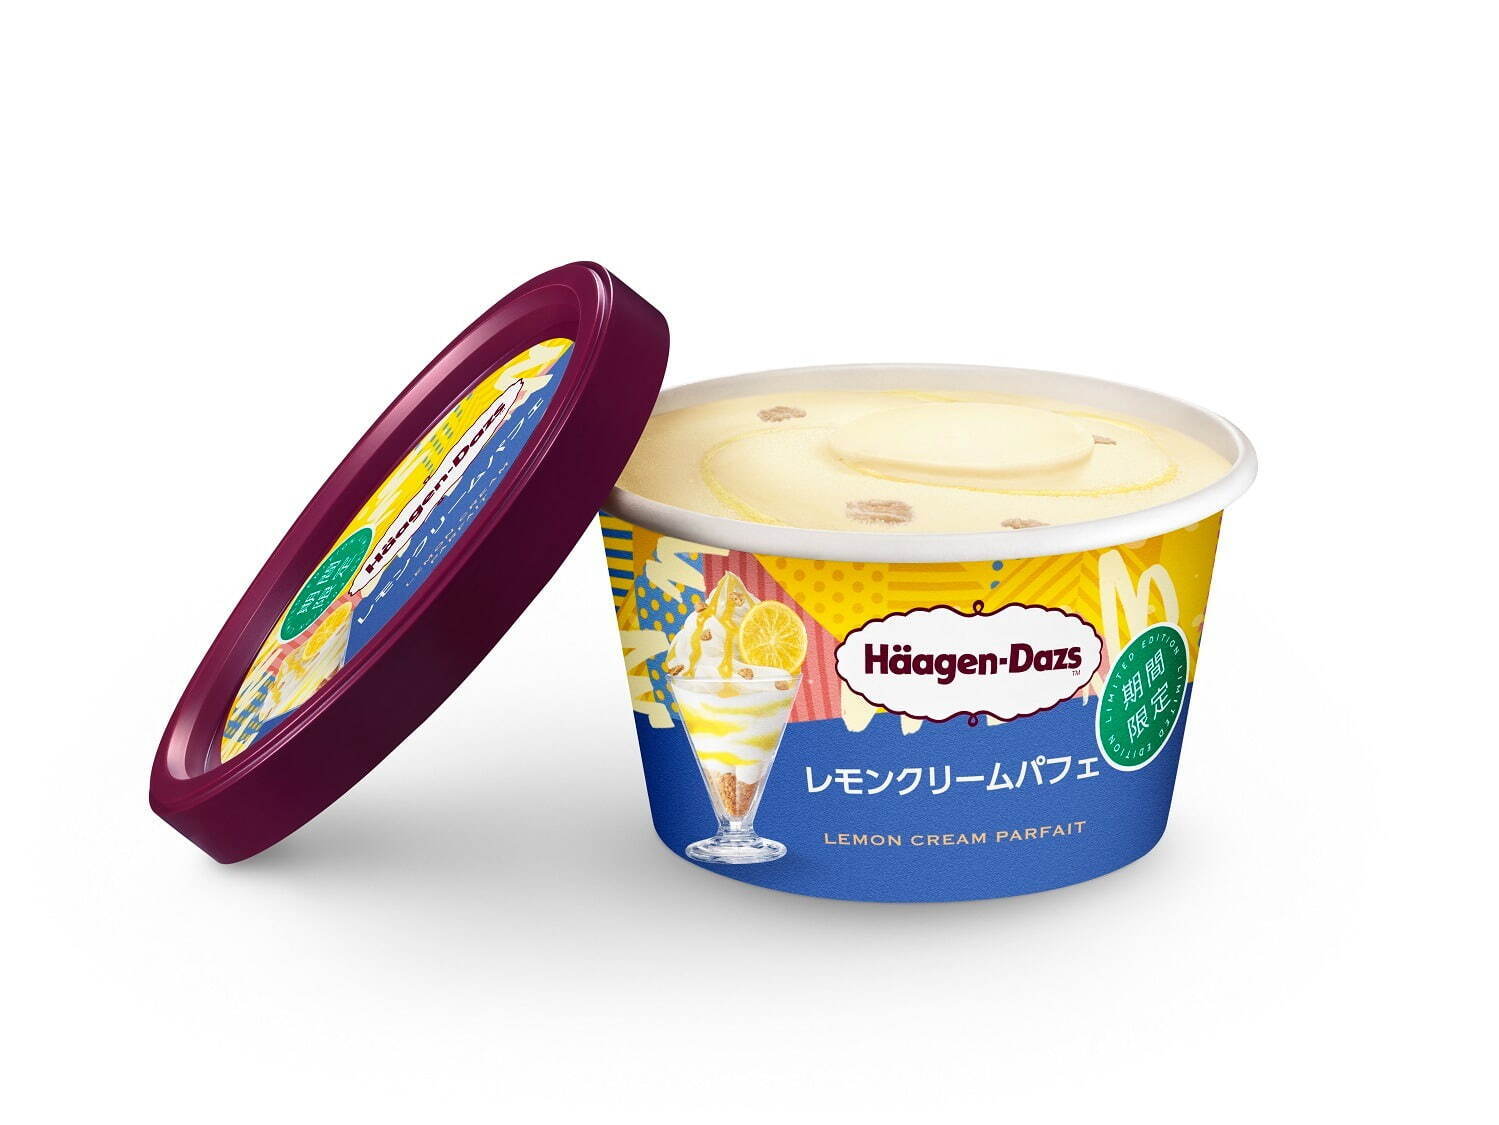 ハーゲンダッツの新作ミニカップ“パフェ仕立て”アイス「レモンクリームパフェ」